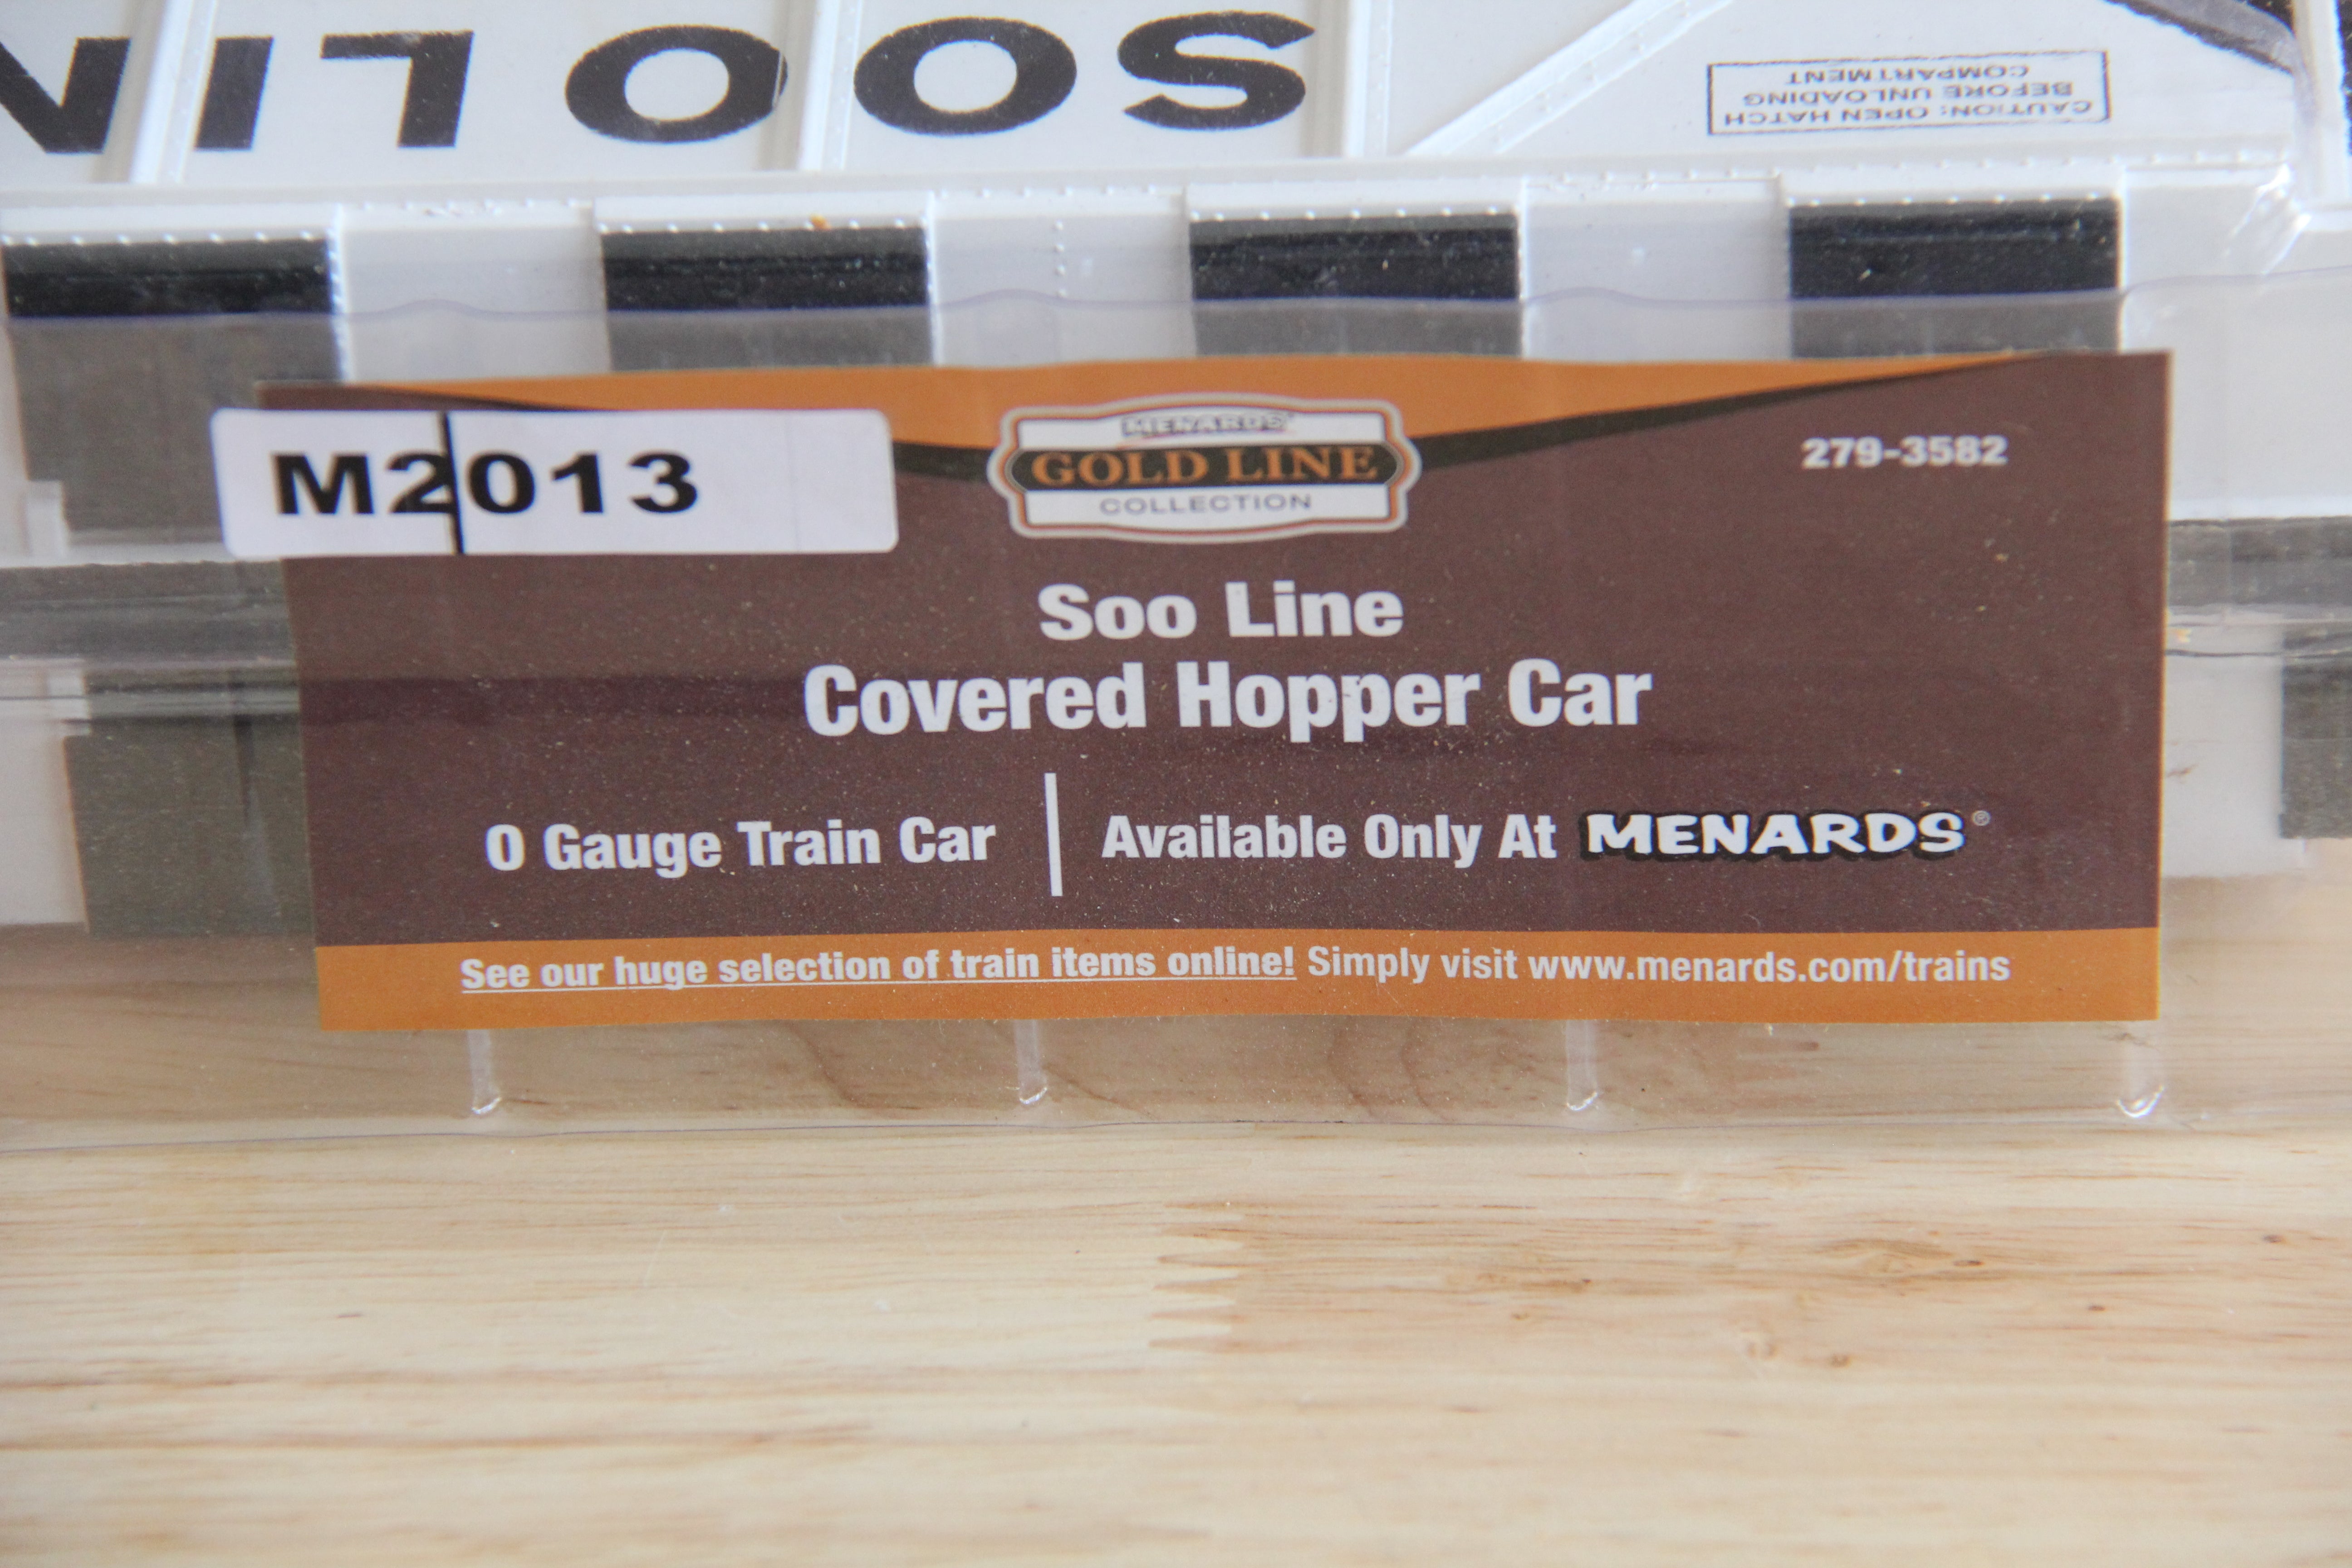 Menards-279-3582 Soo Line Covered Hopper Car-Second hand-M2013